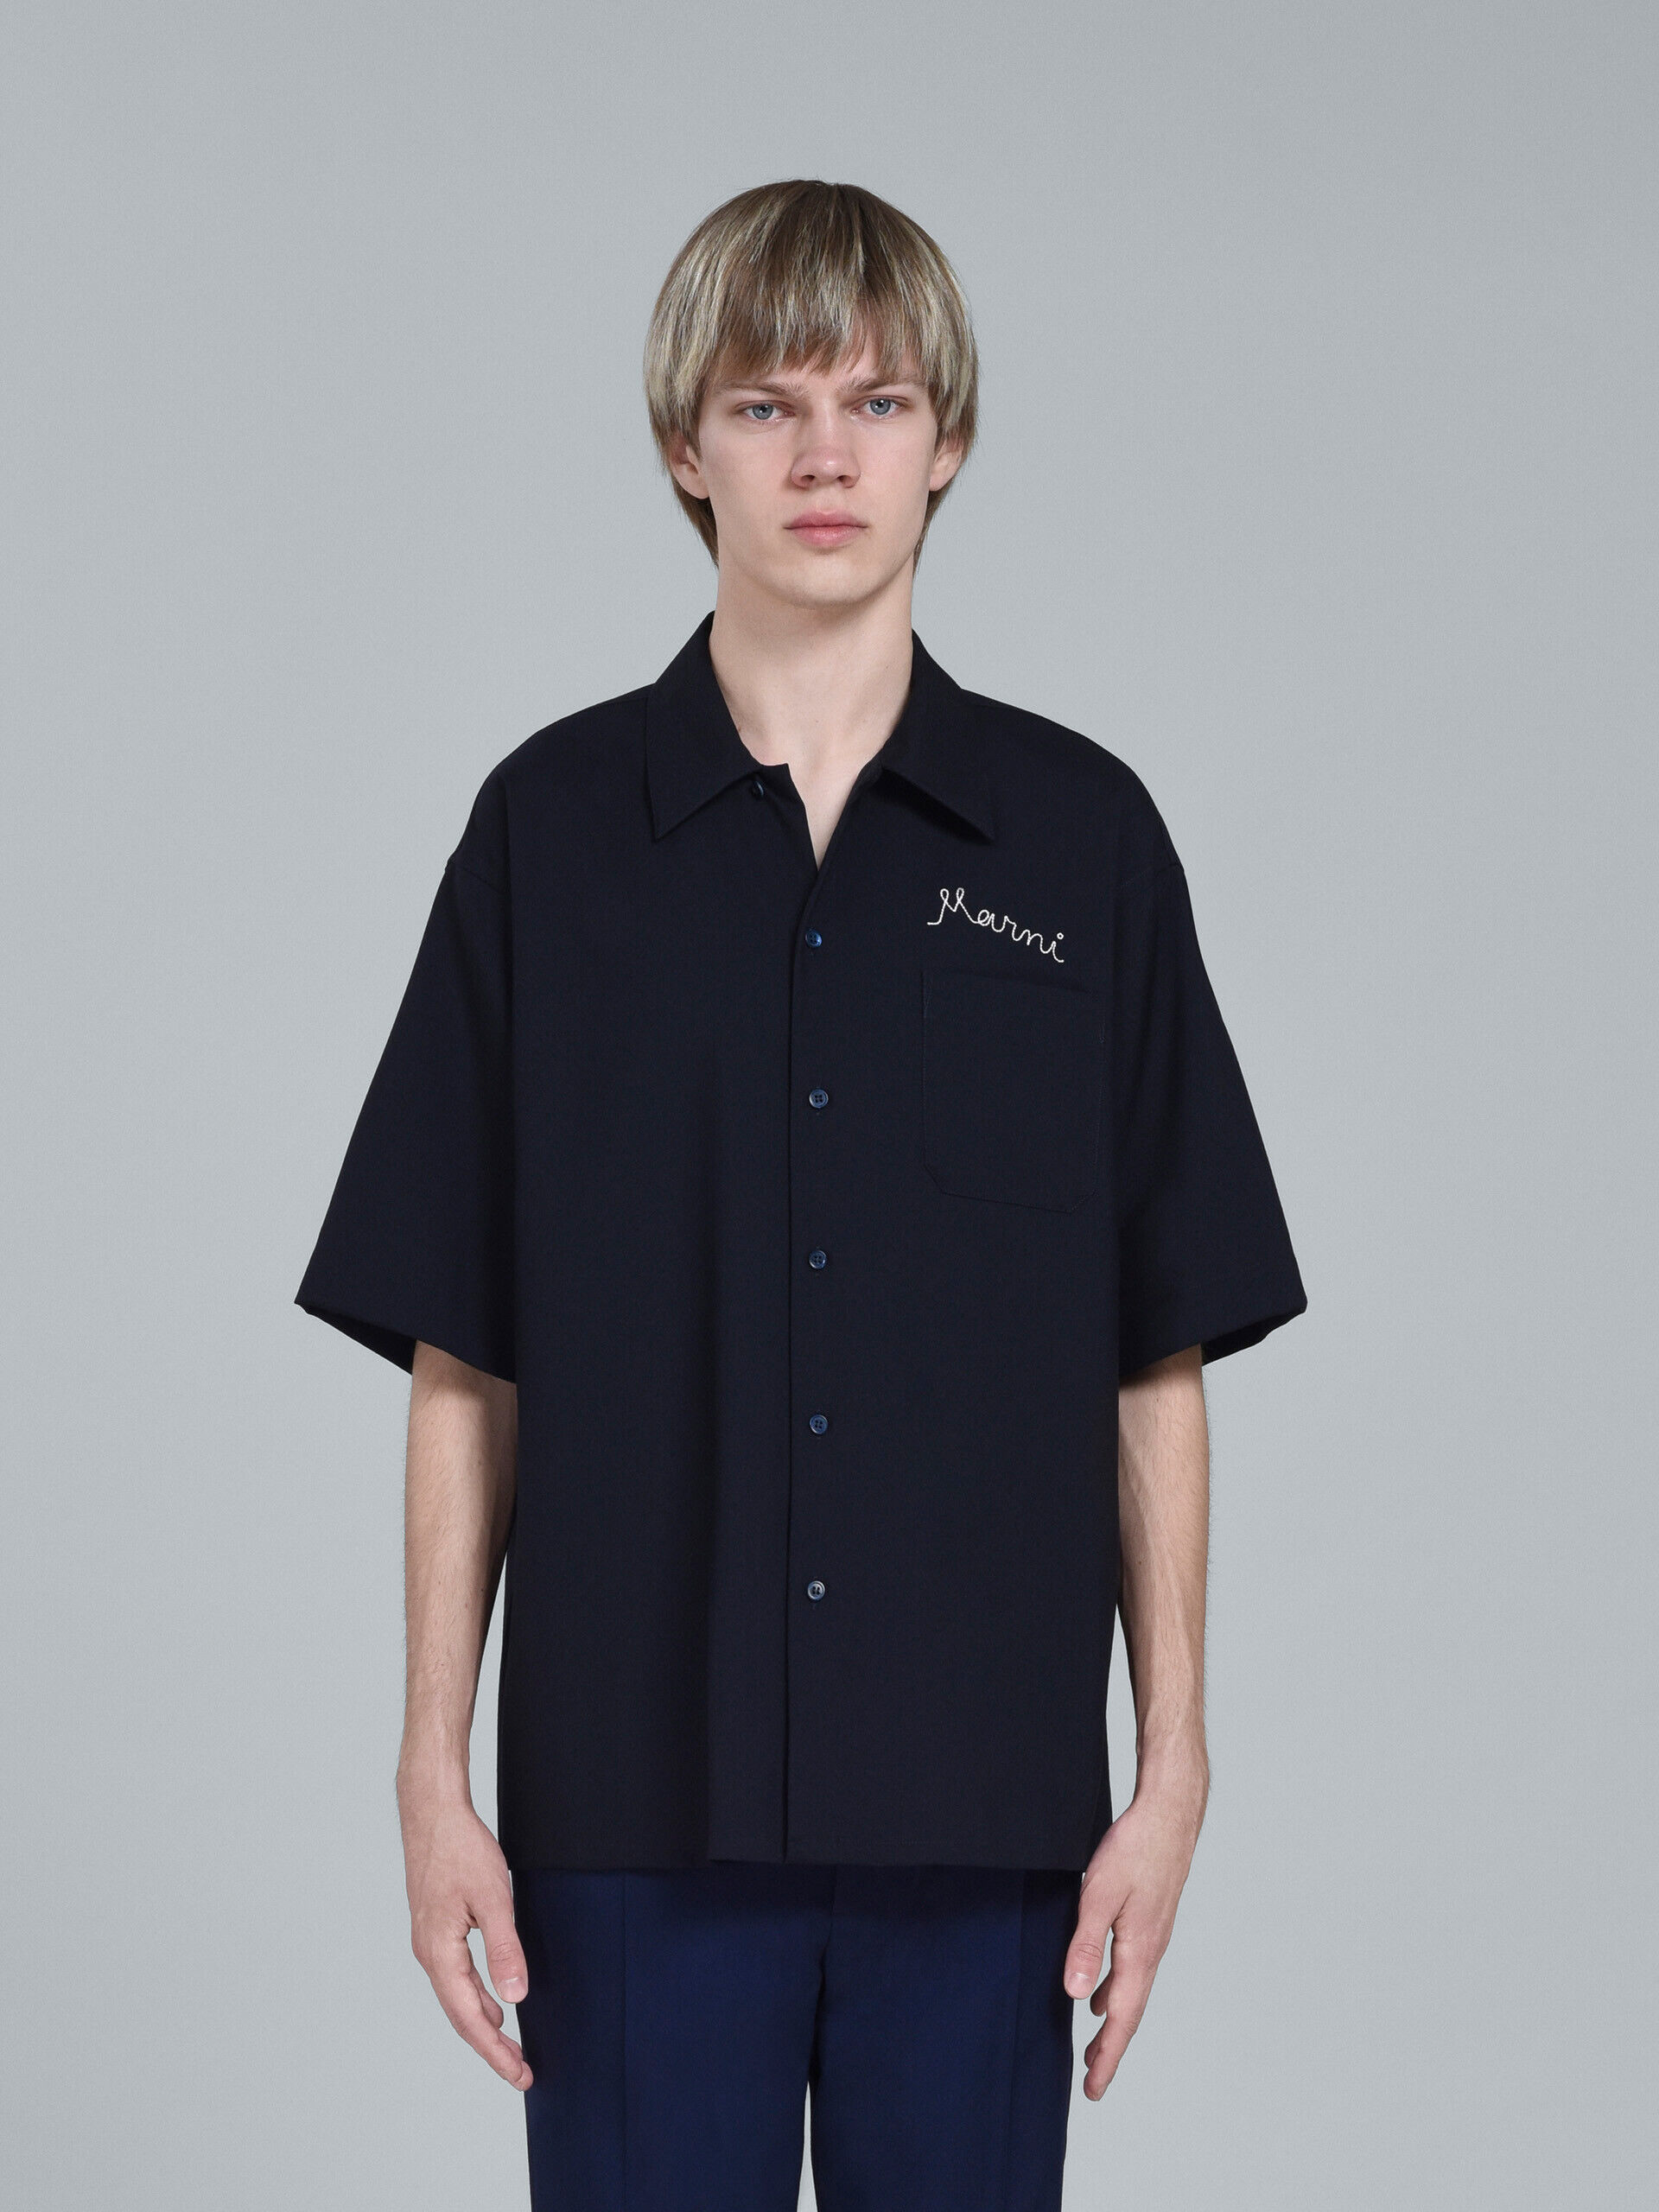 ラグジュアリーMARNI bowling shirts (black,blue) 44